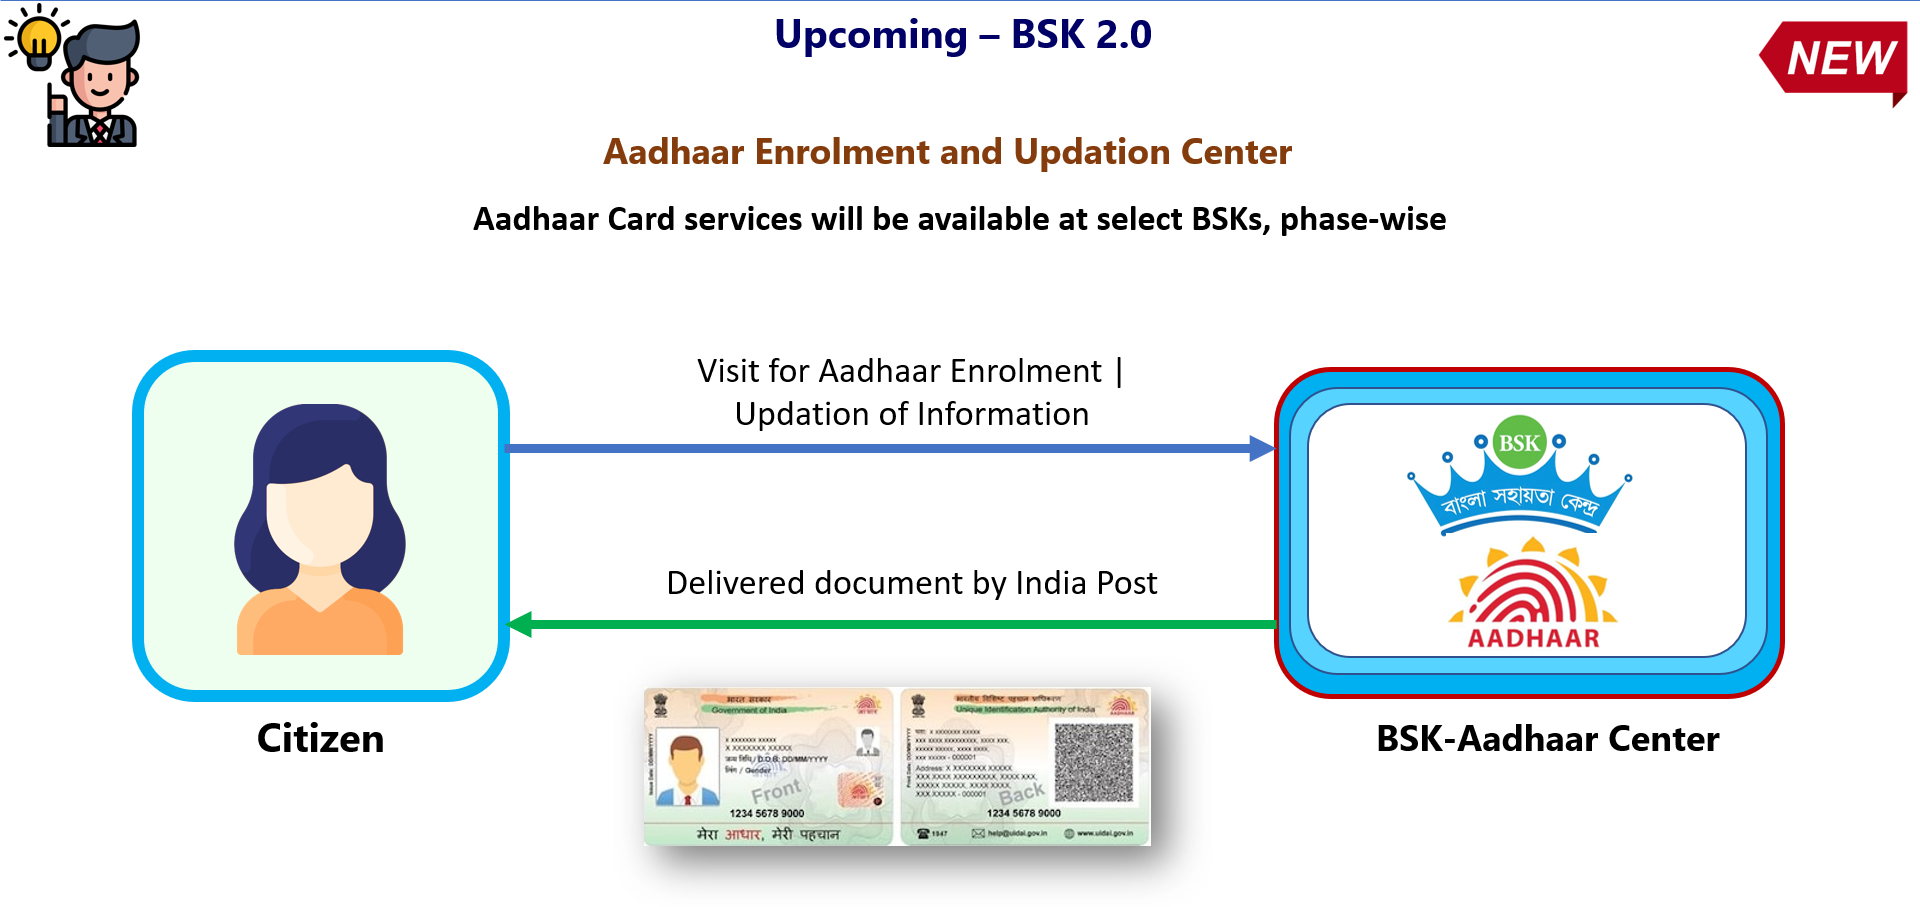 BSK-Aadhaar Center